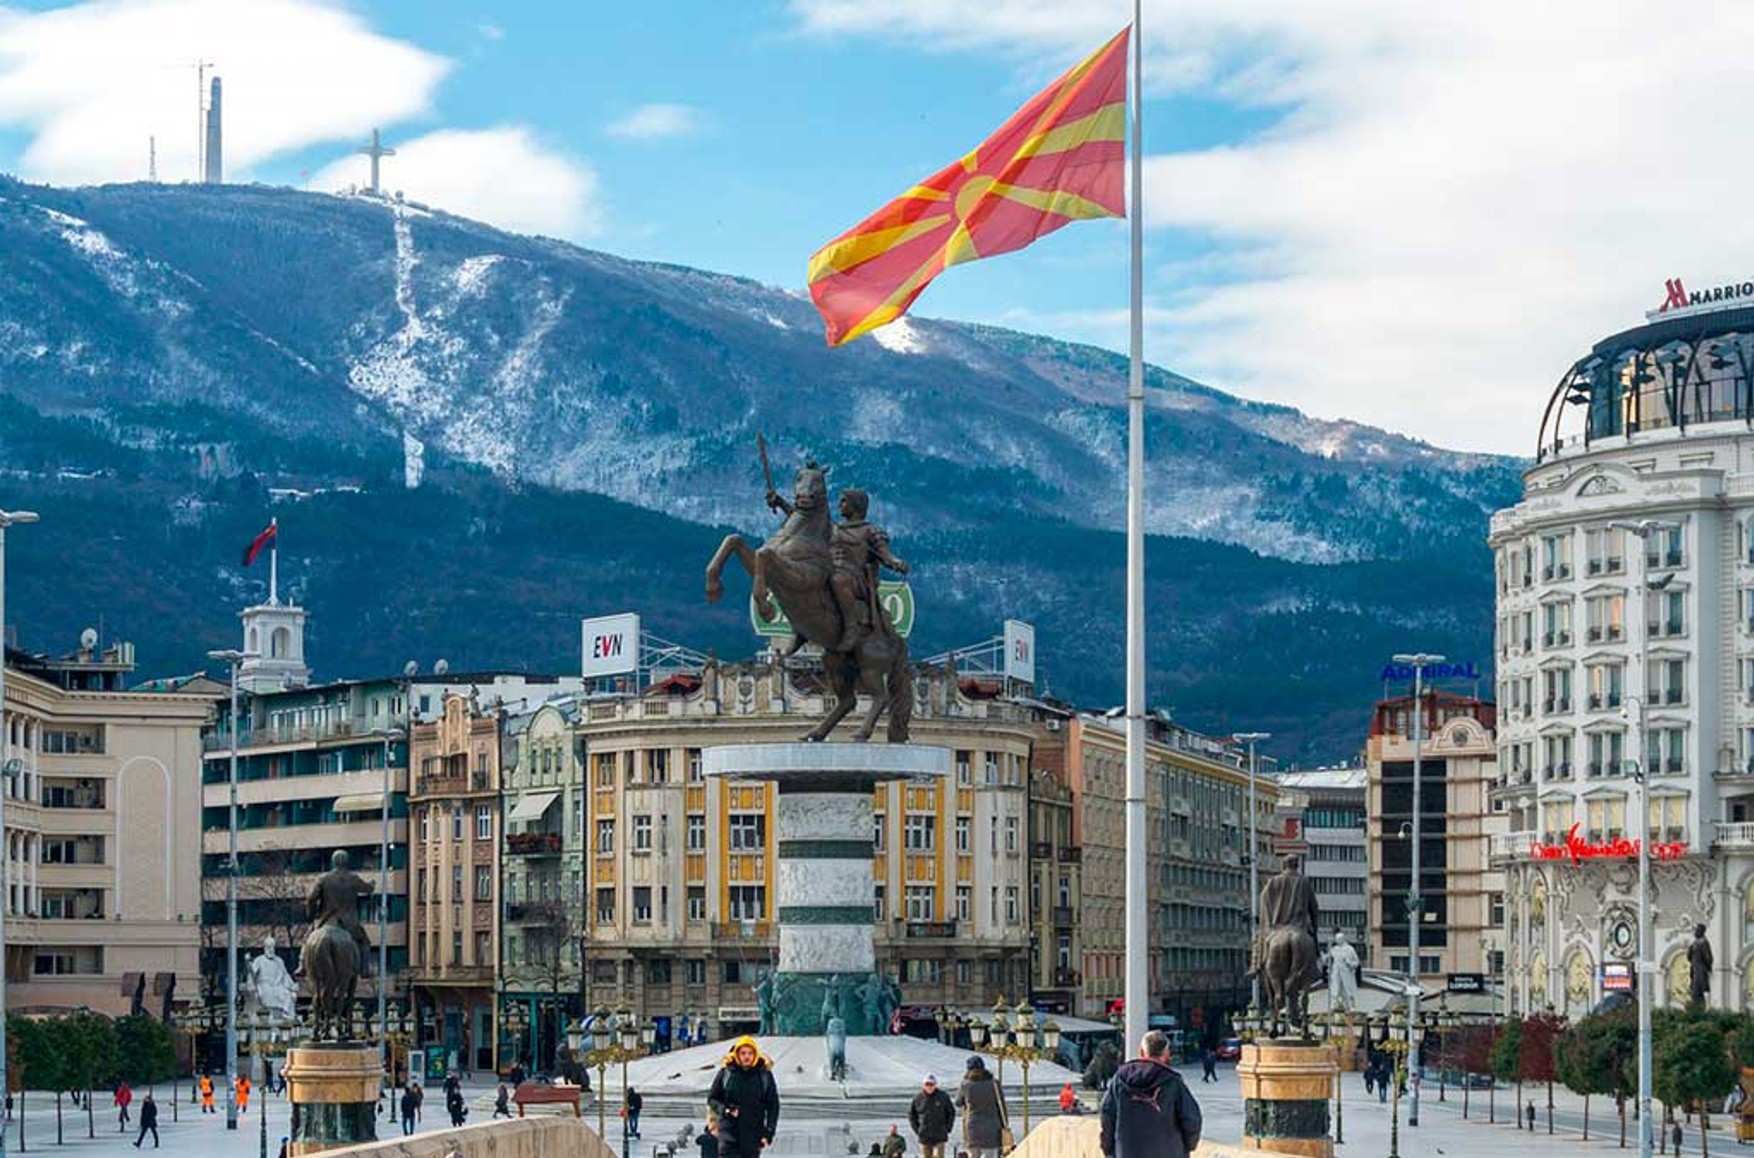 Северная Македония объявила пятерых российских дипломатов персонами нон грата